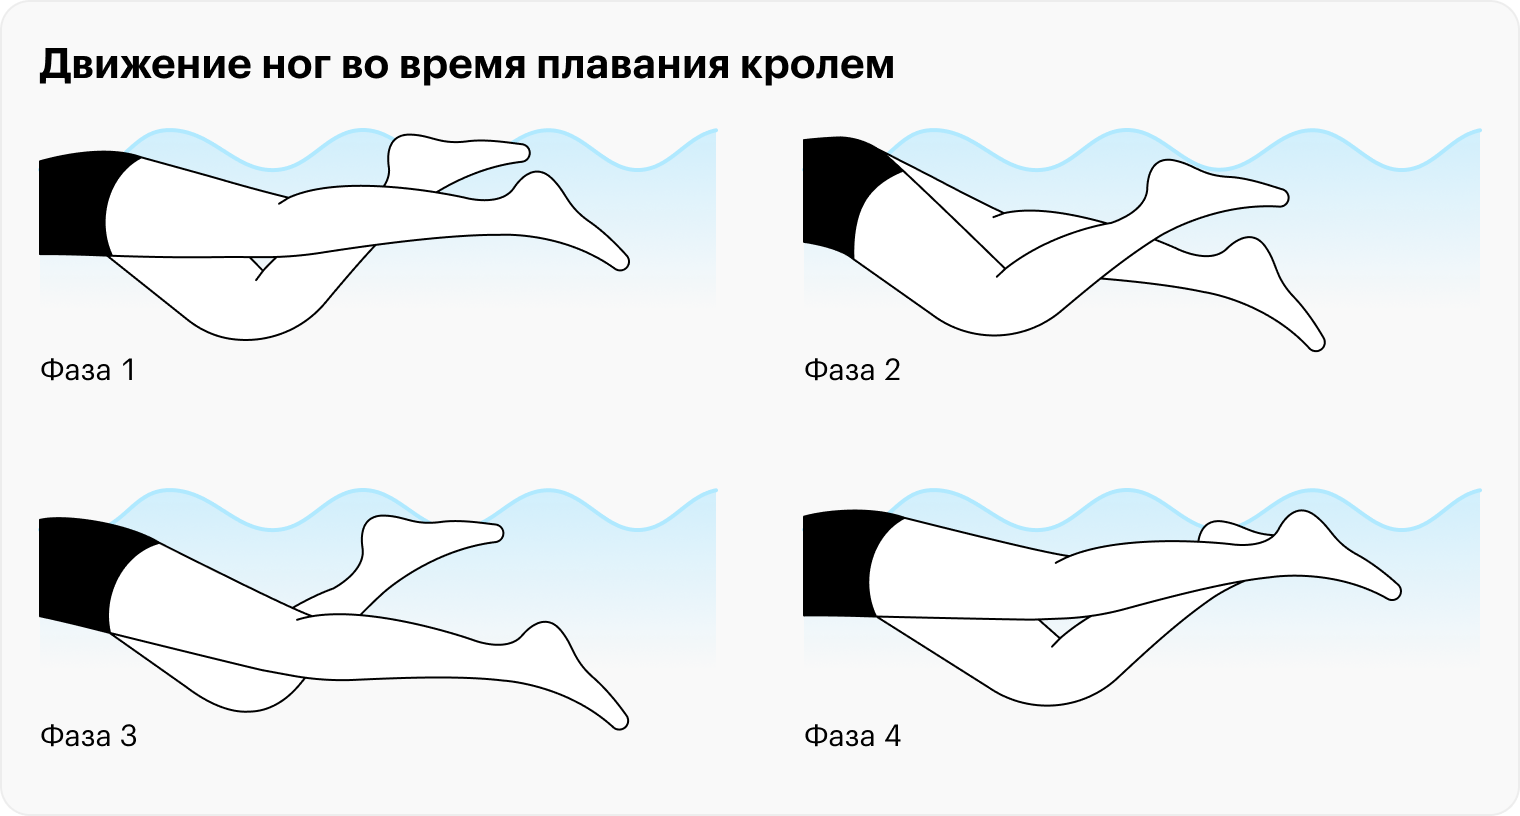 Во время плавания кролем стопы натянуты от себя: так увеличивается сила толчка и скорость продвижения вперед. При движении вниз нога сгибается в коленном суставе, а стопы выполняют завершающее движение — удар. При движении вверх нога выпрямляется